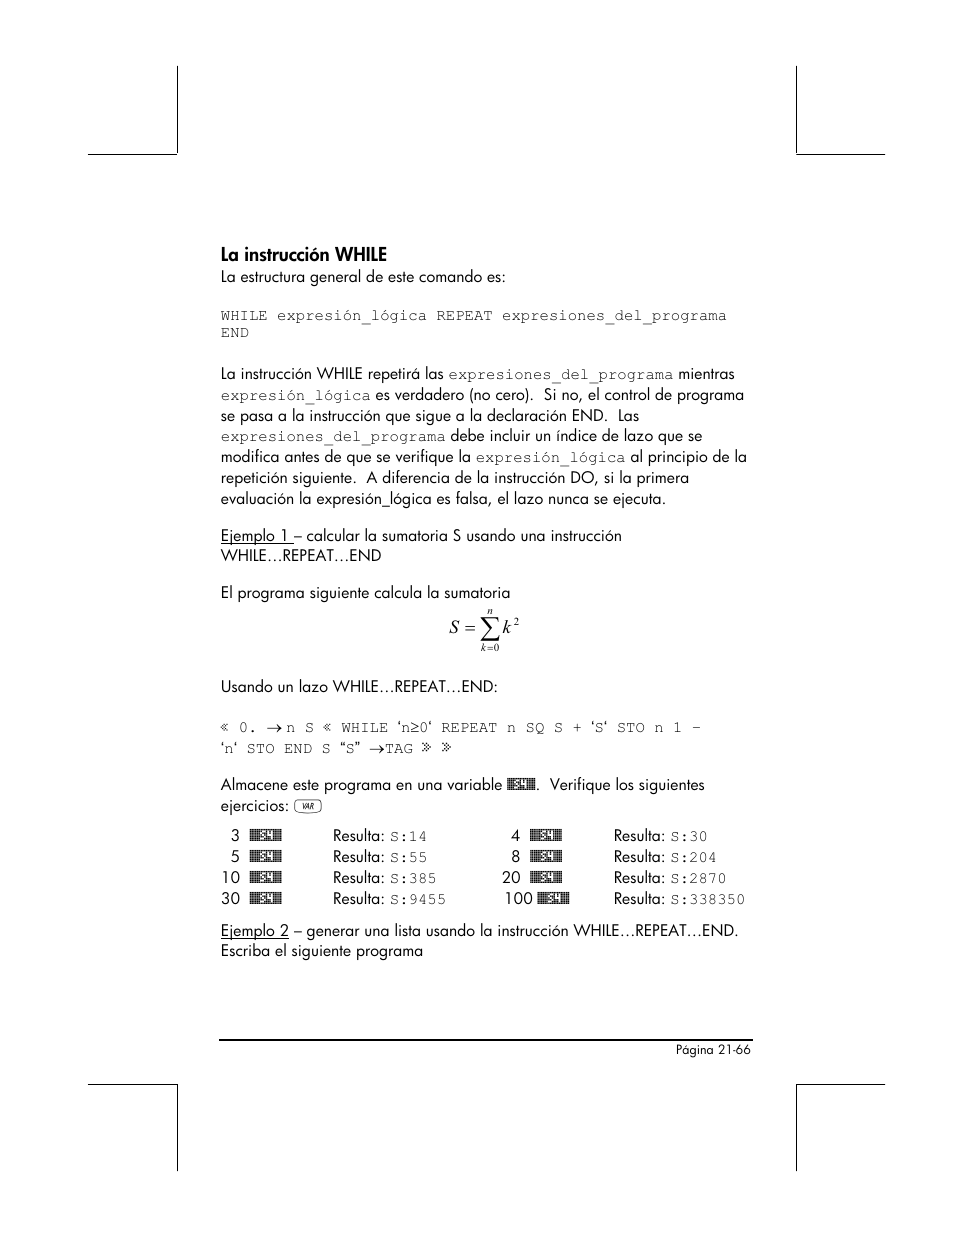 La instruccion while, La instrucción while | HP Calculadora Gráfica HP 49g Manual del usuario | Página 732 / 891